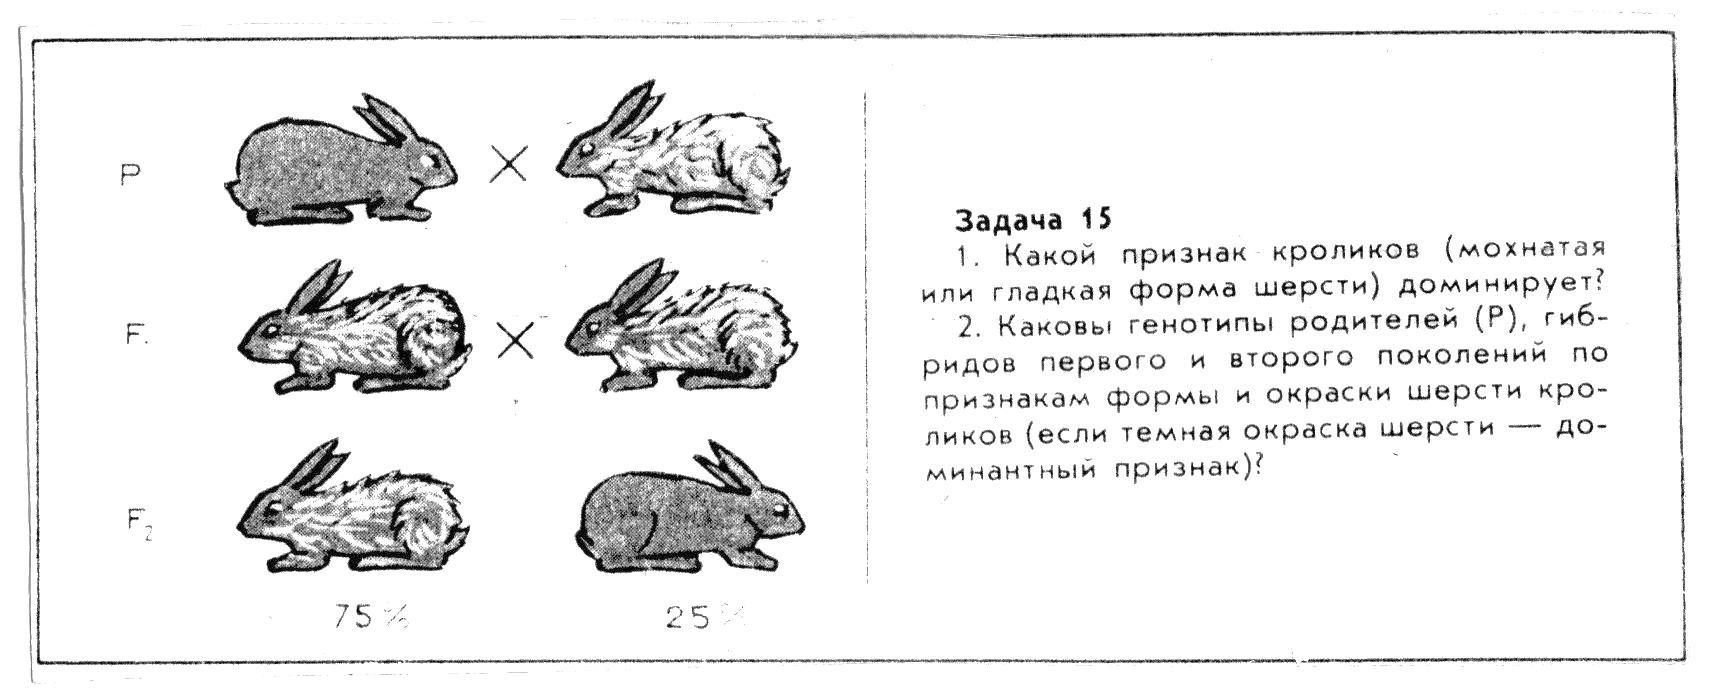 Селекционер скрестил самку чистой линии мыши черного. Генетические задачи про кроликов по биологии 9 класс. Задания про кроликов. Задание с кроликом по биологии. Задачи про кроликов для детей.